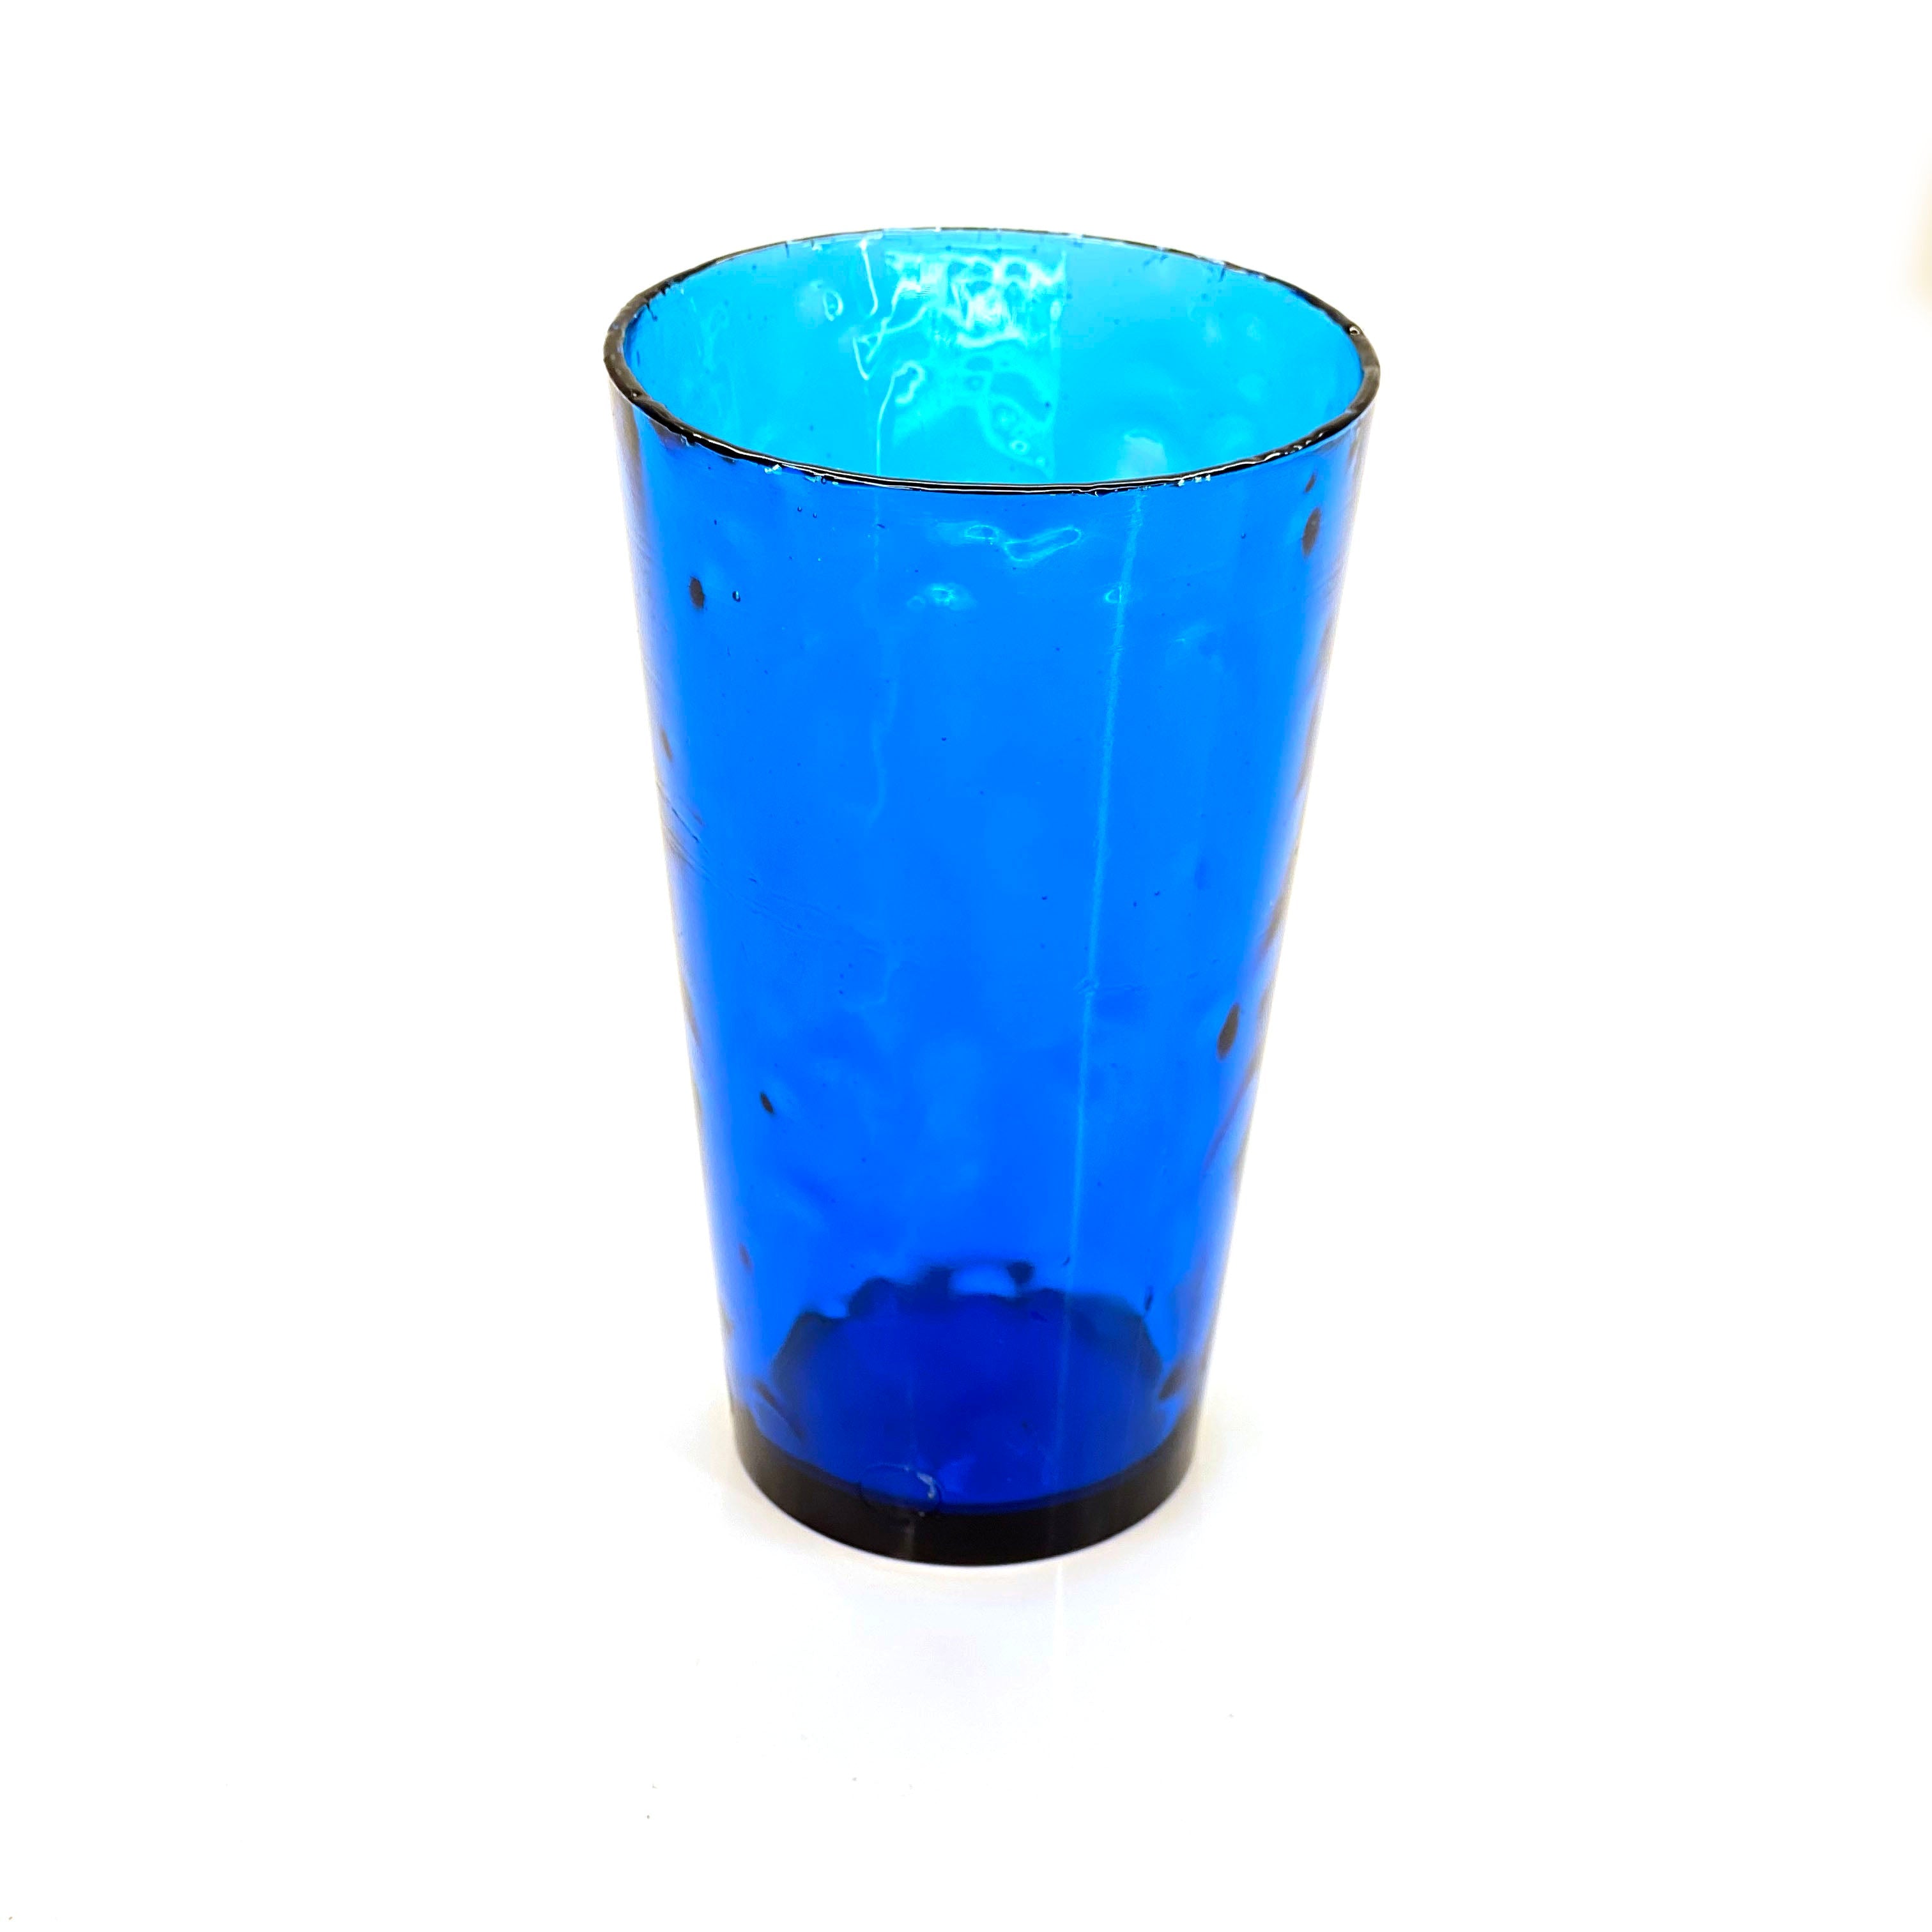 SMASHProps Breakaway Beer Pint Glass Prop - COBALT BLUE translucent - Cobalt Blue Translucent